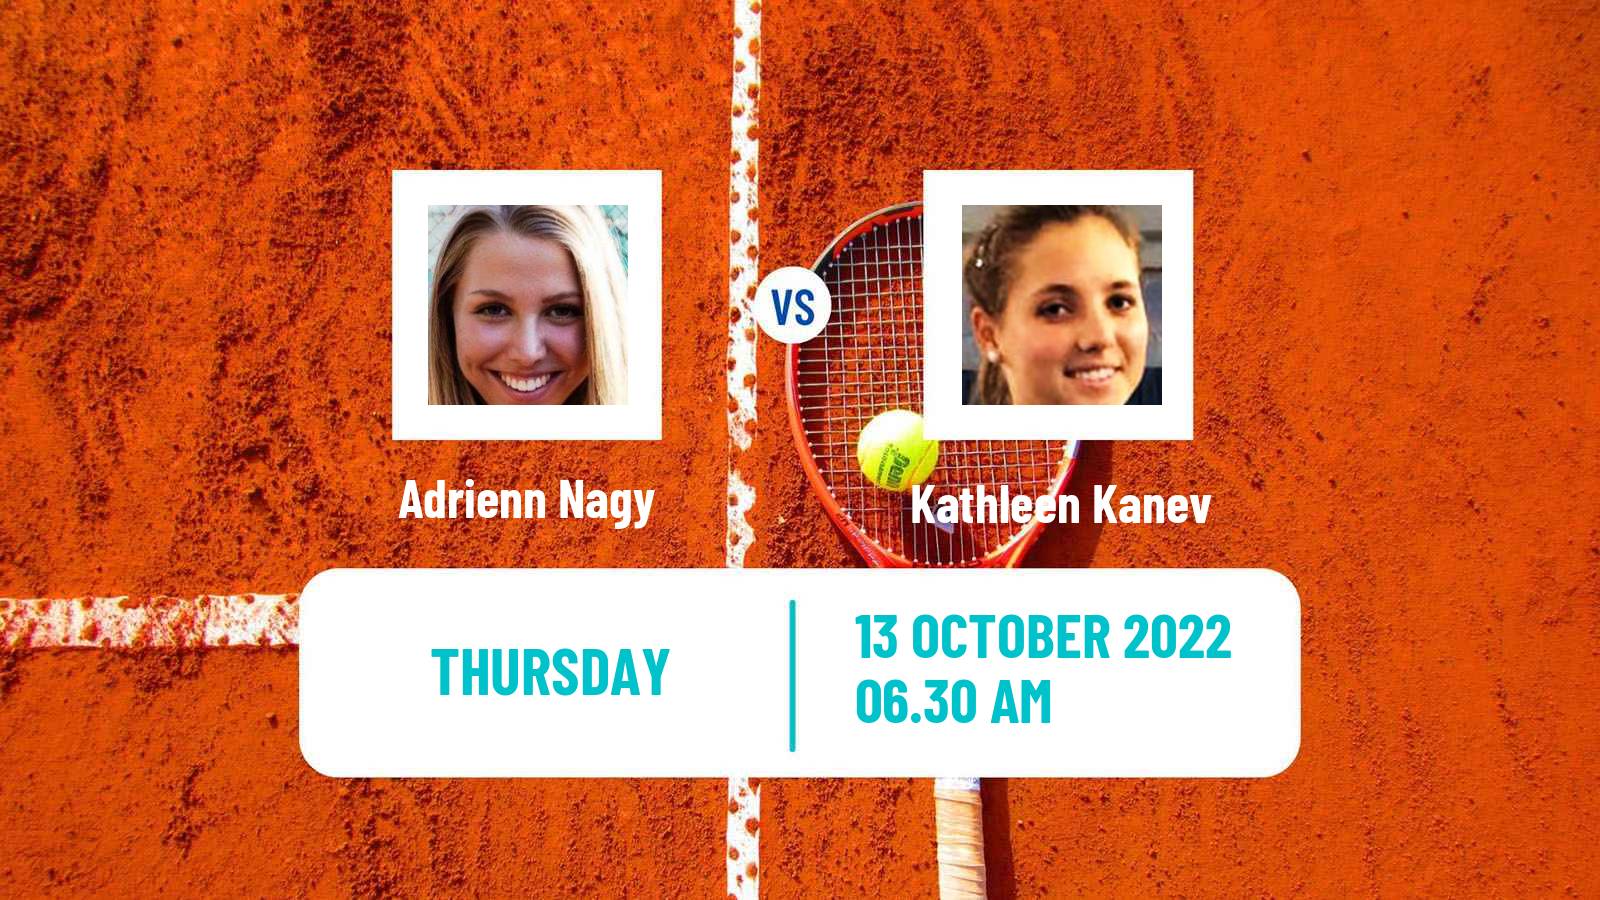 Tennis ITF Tournaments Adrienn Nagy - Kathleen Kanev